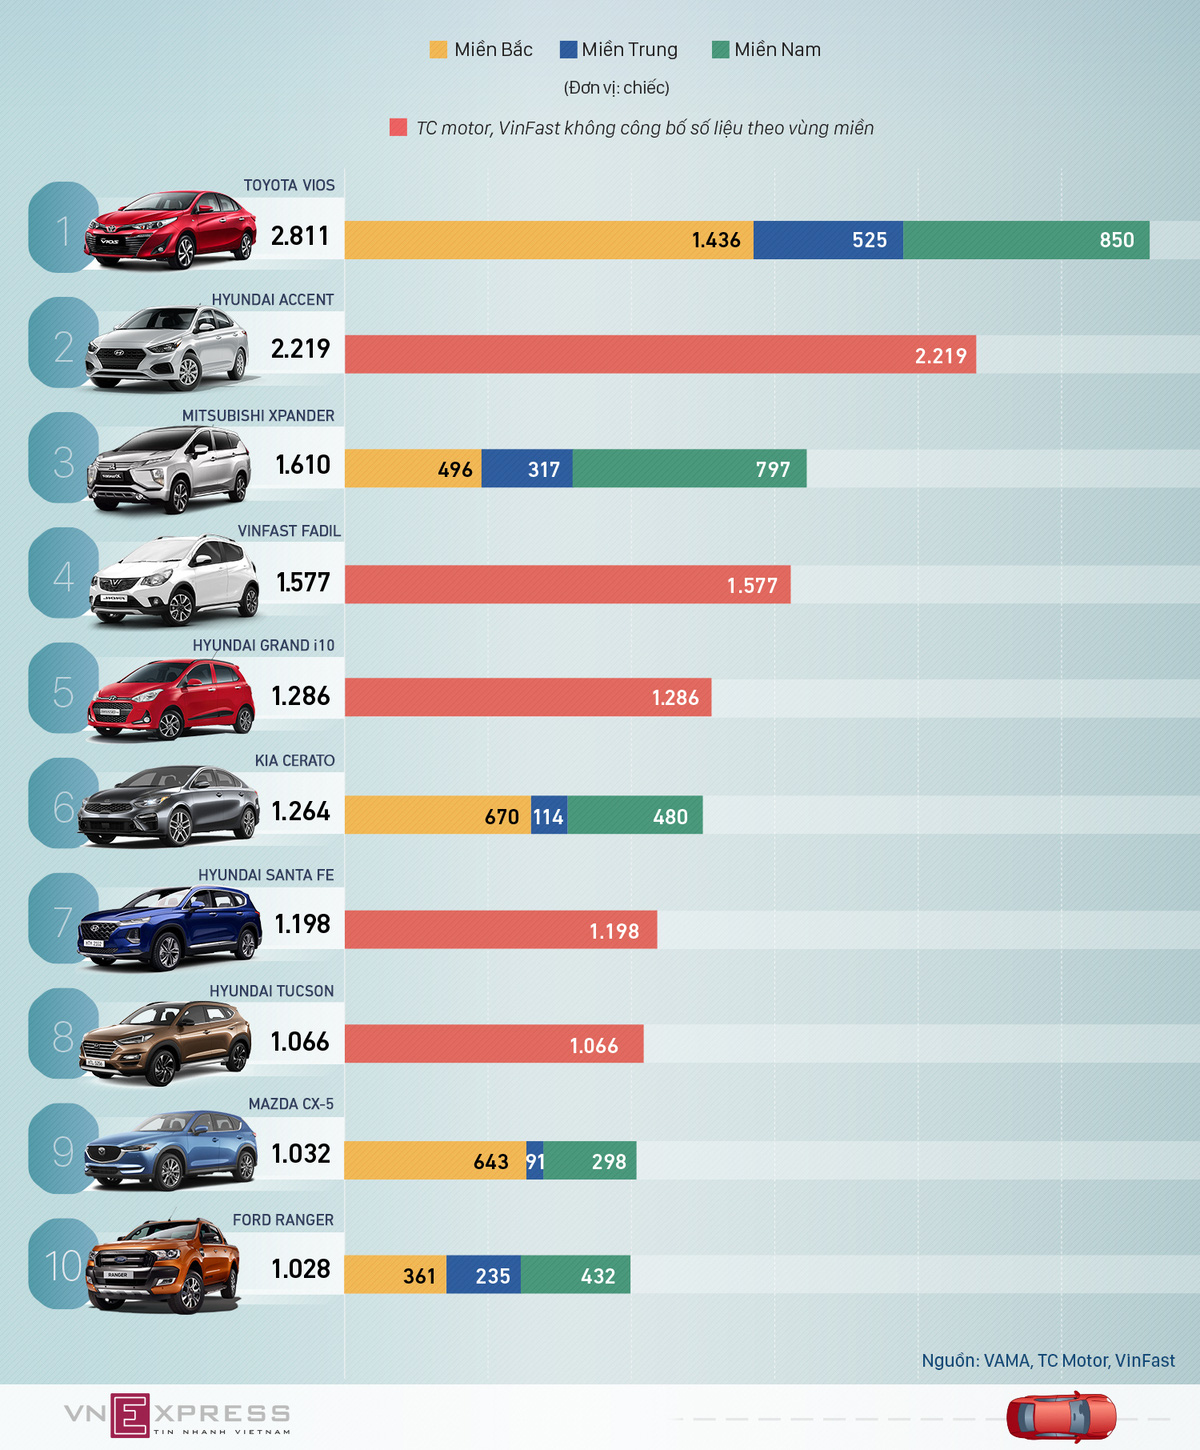 10 ôtô bán chạy nhất tháng 7 - Vios lẻ loi, VinFast Fadil giữ đà tăng tốc - Ảnh 1.